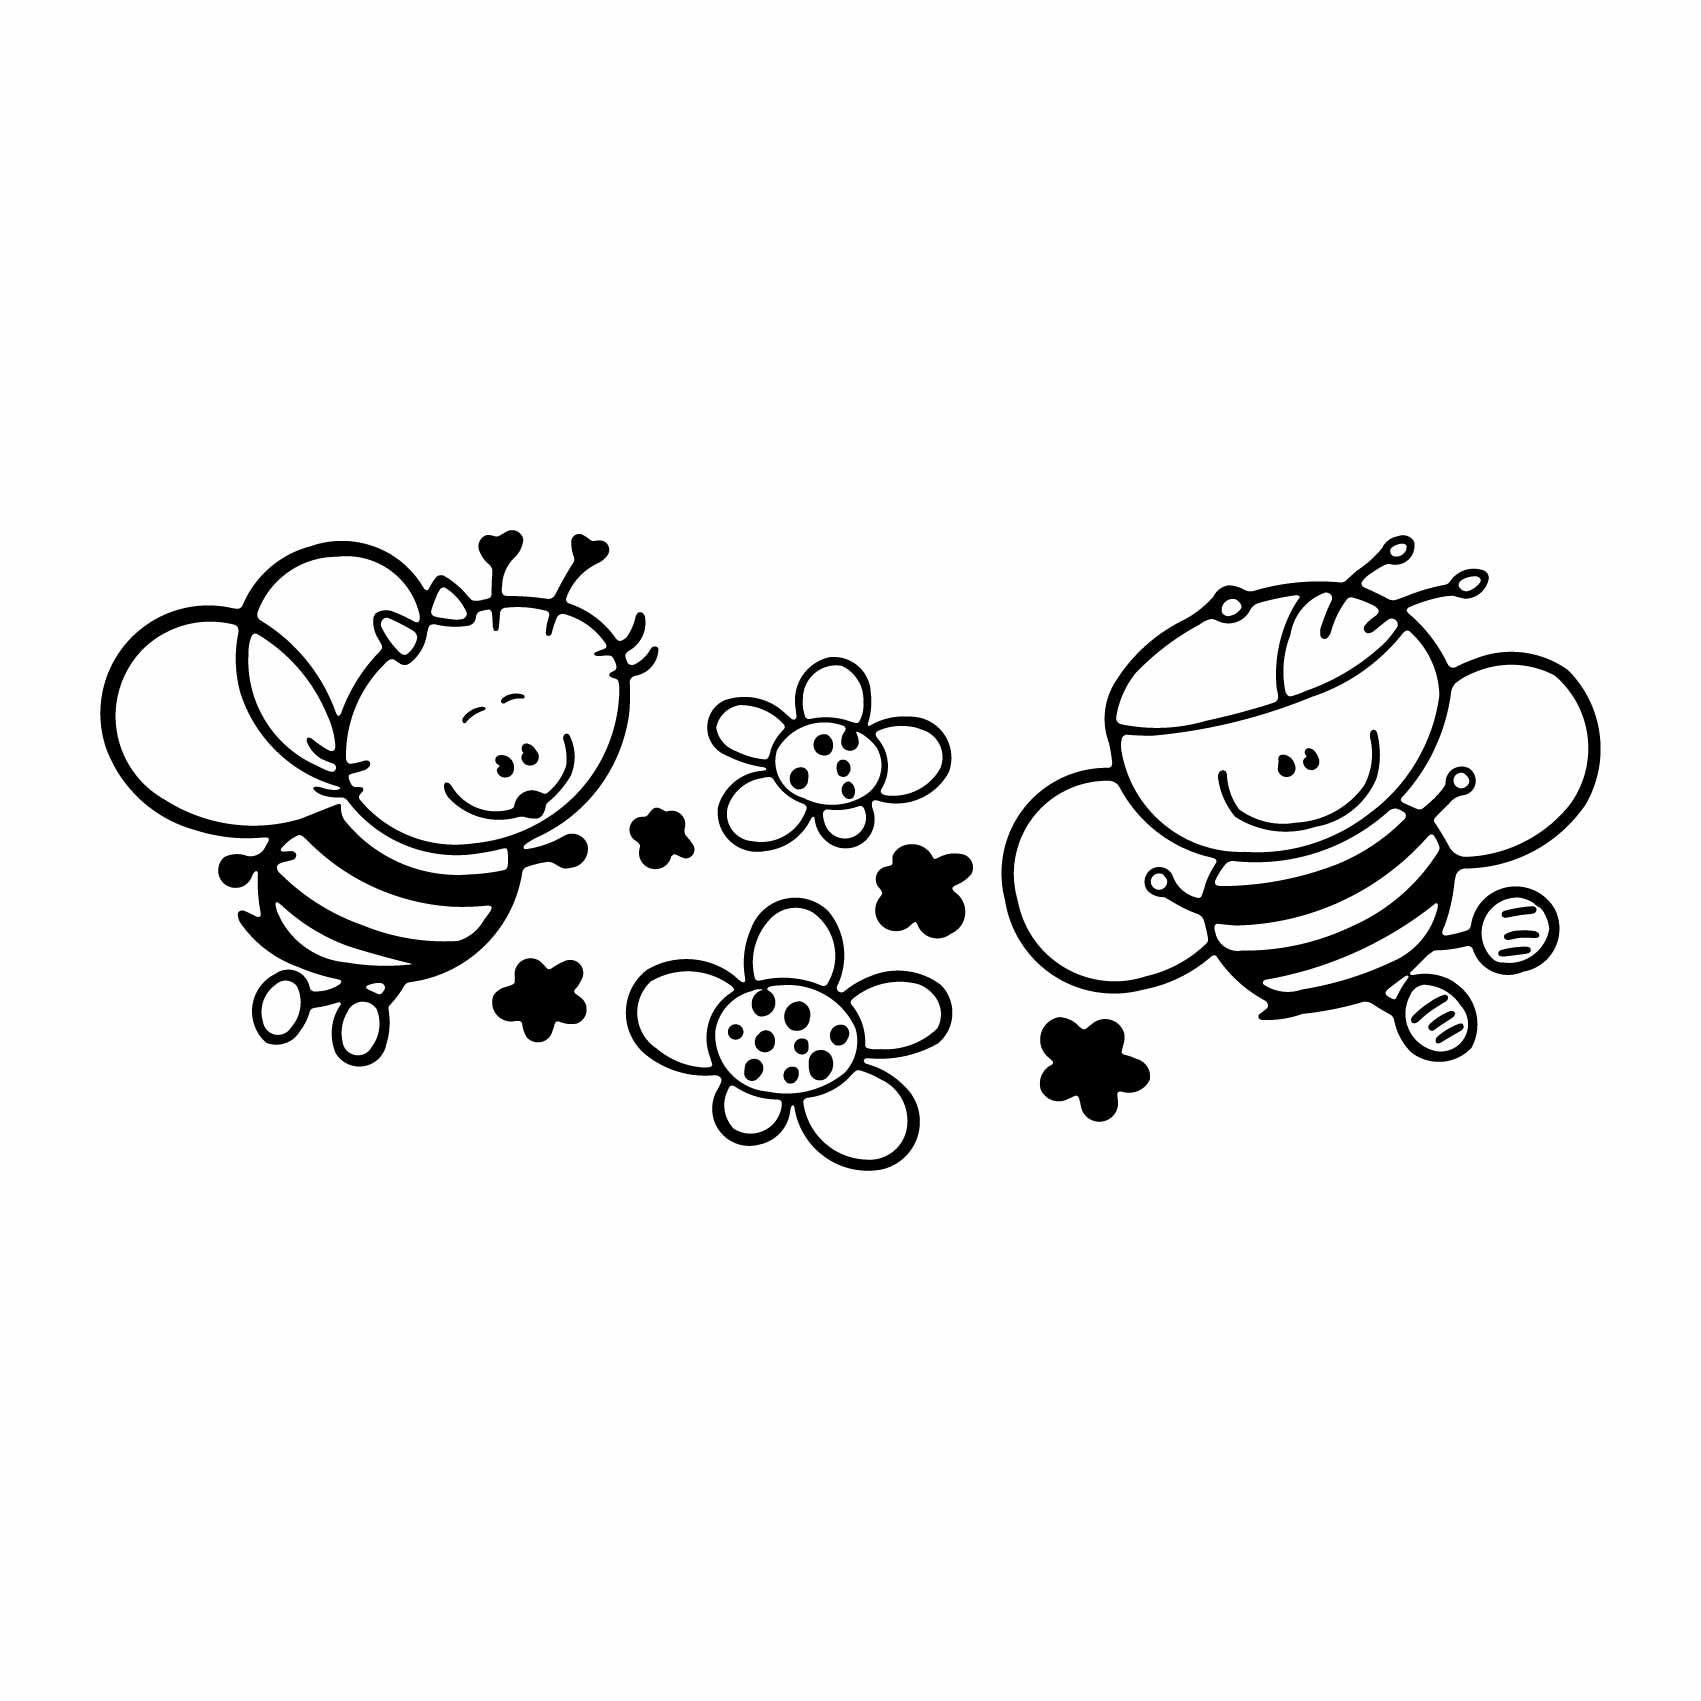 stickers-abeilles-bébé-ref18bebe-stickers-muraux-bébé-autocollant-mural-bébé-sticker-chambre-enfant-bébé-garcon-fille-decoration-deco-(2)